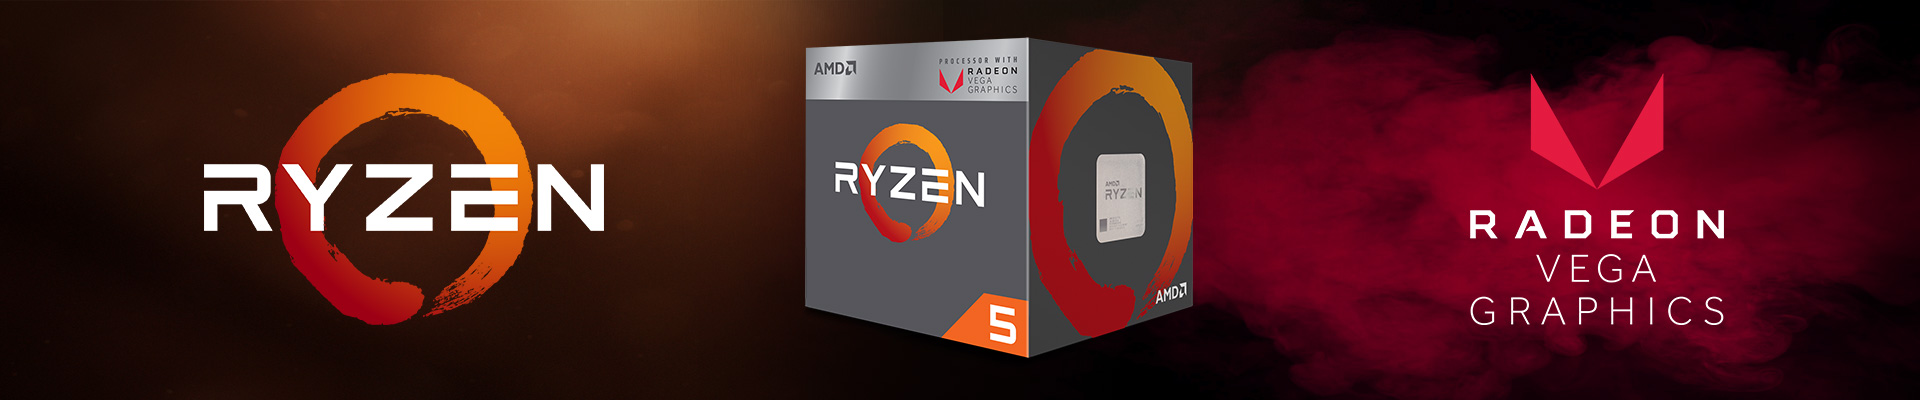 CPU AMD Ryzen 5 2400G 3.6 GHz chính hãng